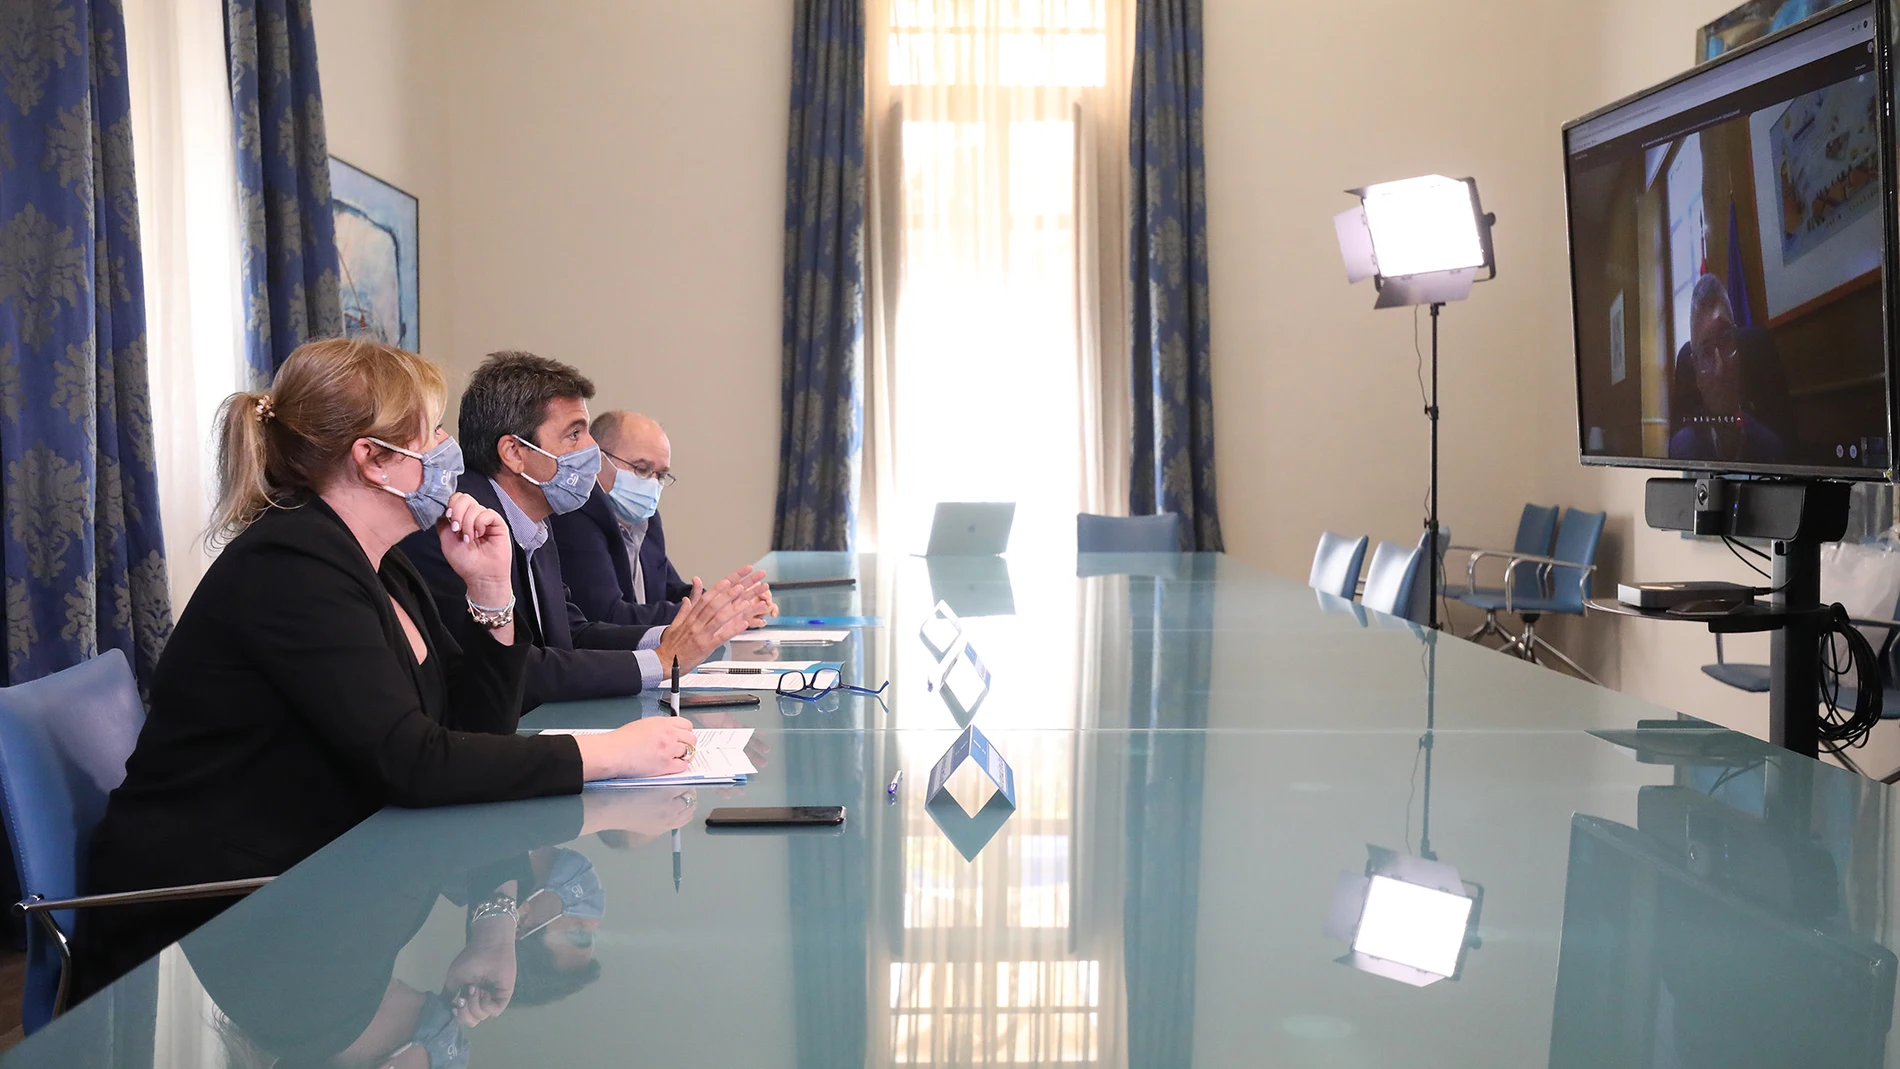 El presidente de la Diputación de Alicante se reúne por videoconferencia con el Secretario de Estado de Medio Ambiente para exponerle las reivindicaciones de los regantes y agricultores